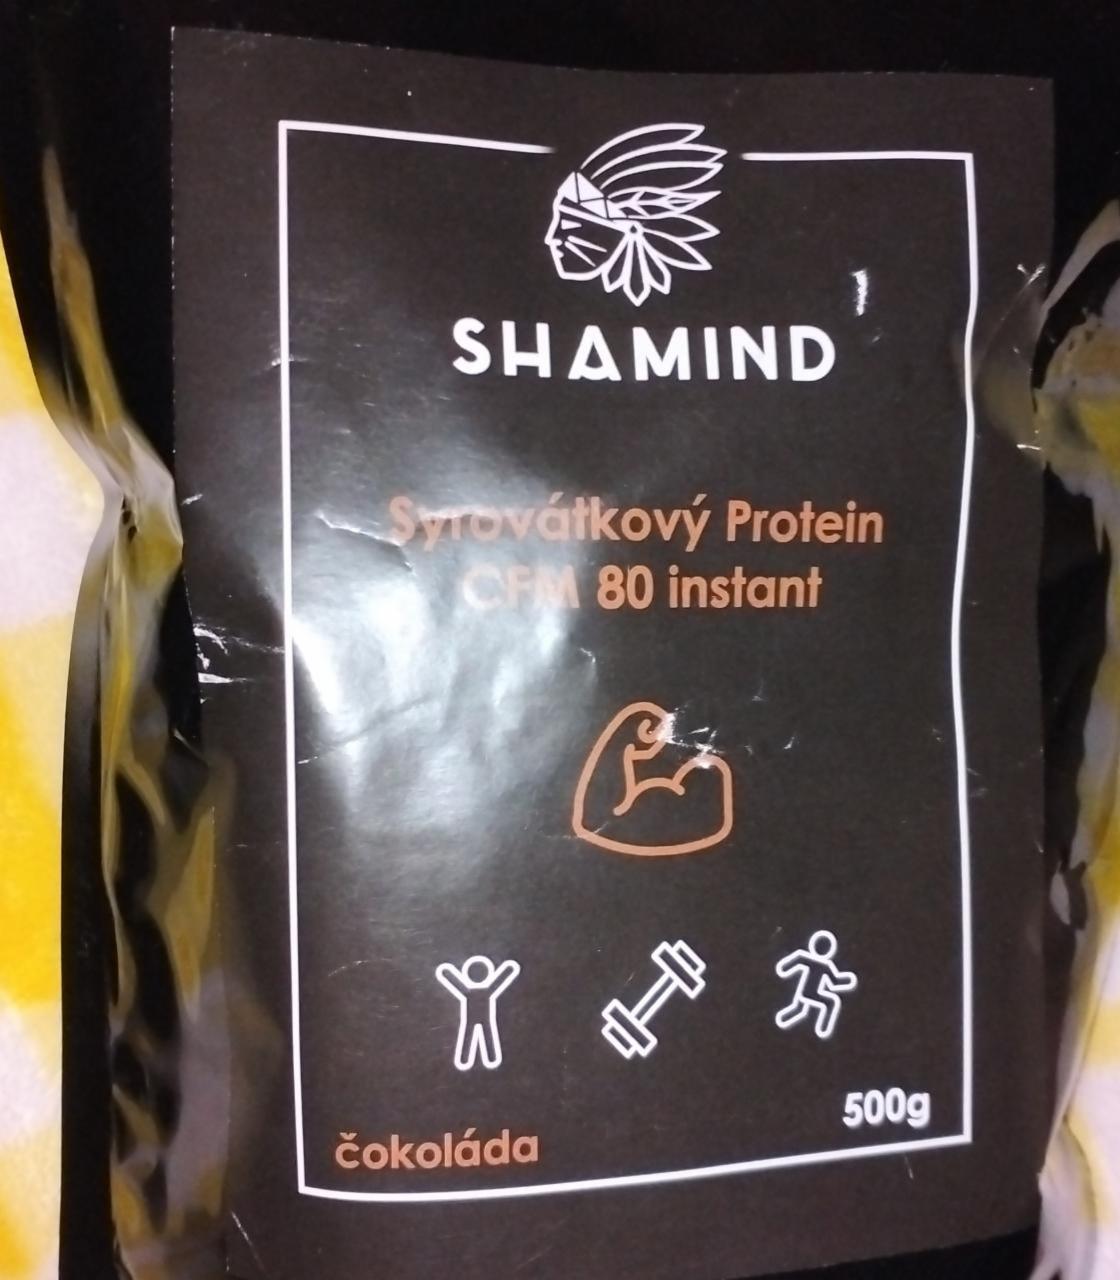 Fotografie - Syrovátkový Protein CFM 80 instant čokoláda Shamind